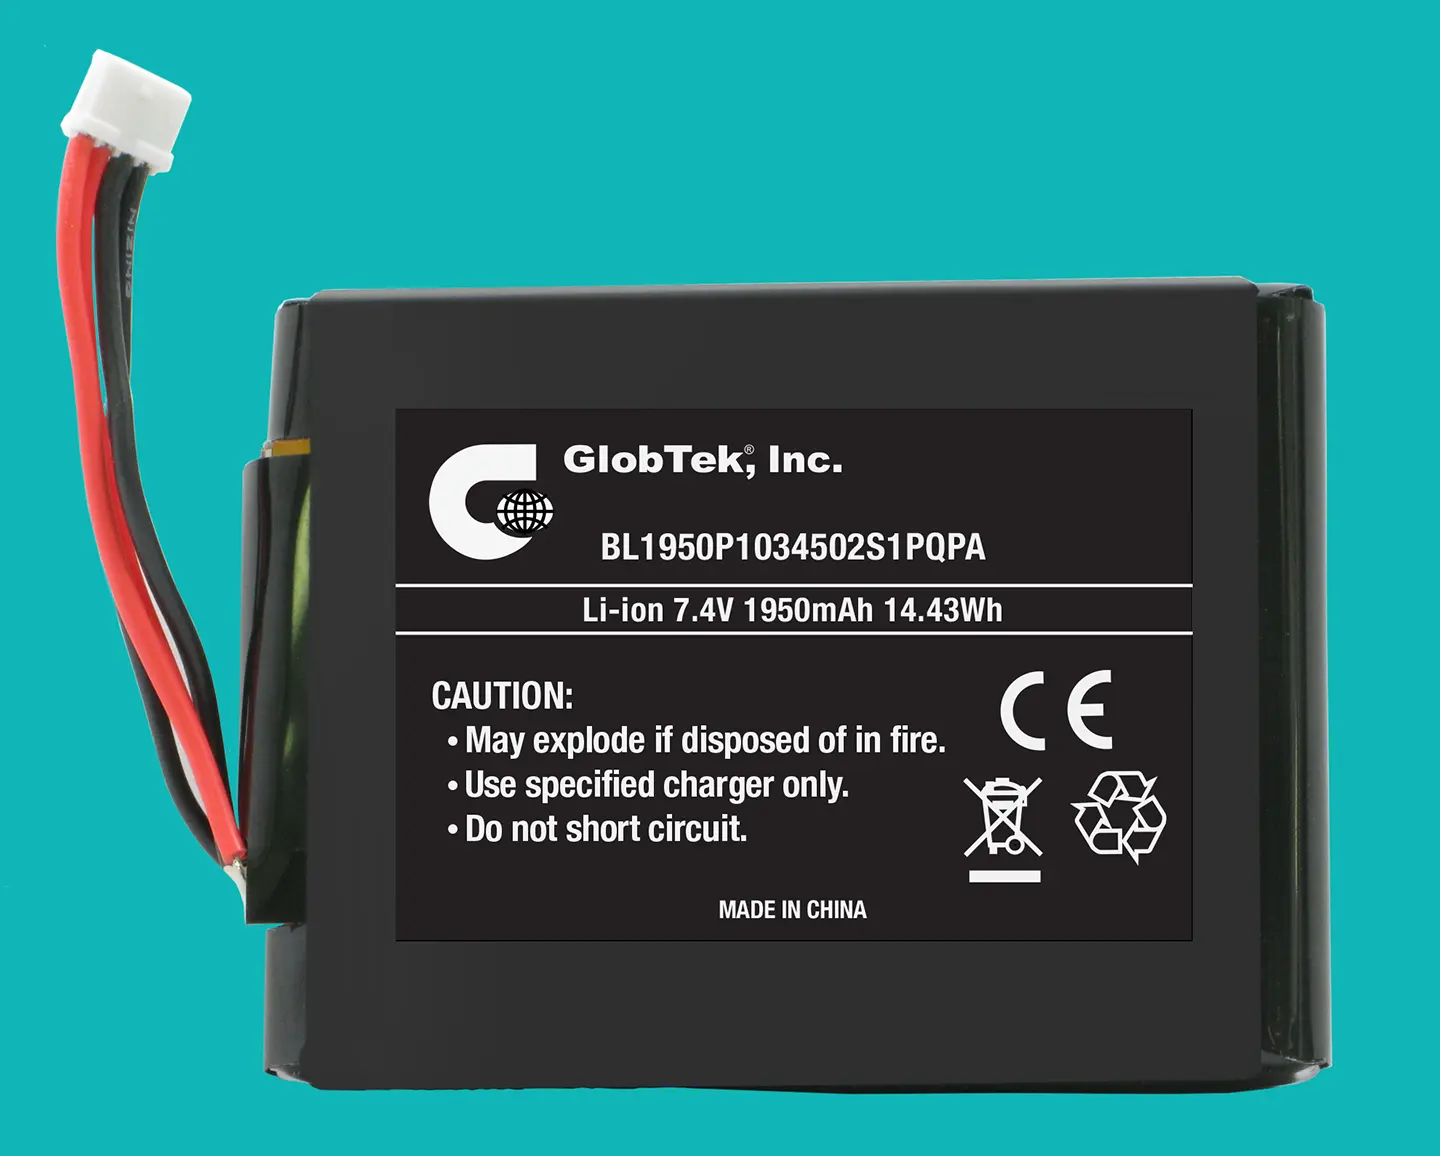 Pack batterie Li-Ion prismatique de GlobTek, un BL1950P1034502S1PQPA de 7,4V/1950mAh, homologué UL 1642 et conforme à la norme CE 2004/108/CE en matière de compatibilité électromagnétique, y compris EN61000-6-1:2007, EN61000-6 -3:2007 !
